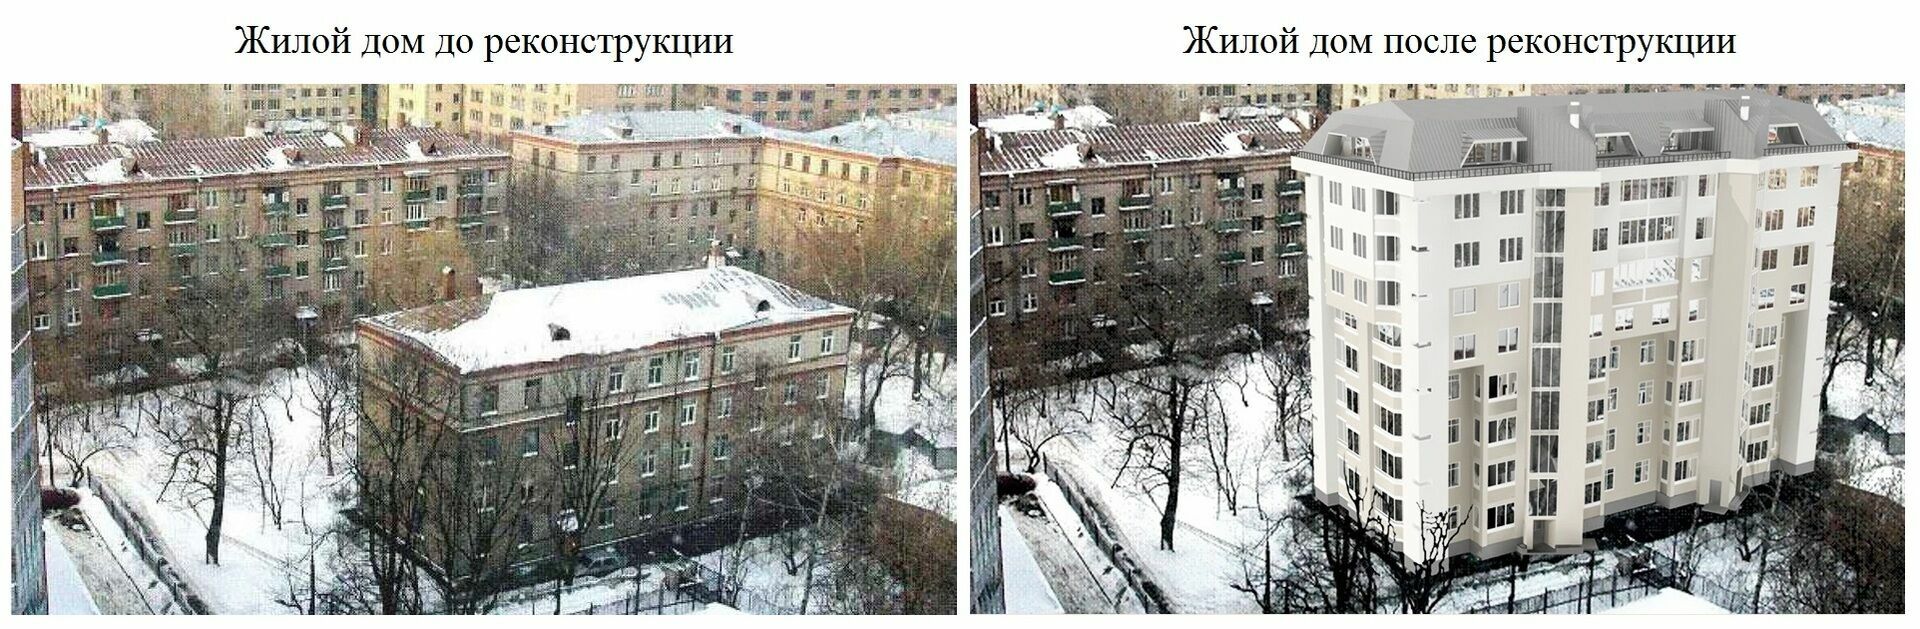 Жилой дом до и после реконструкции (Москва)